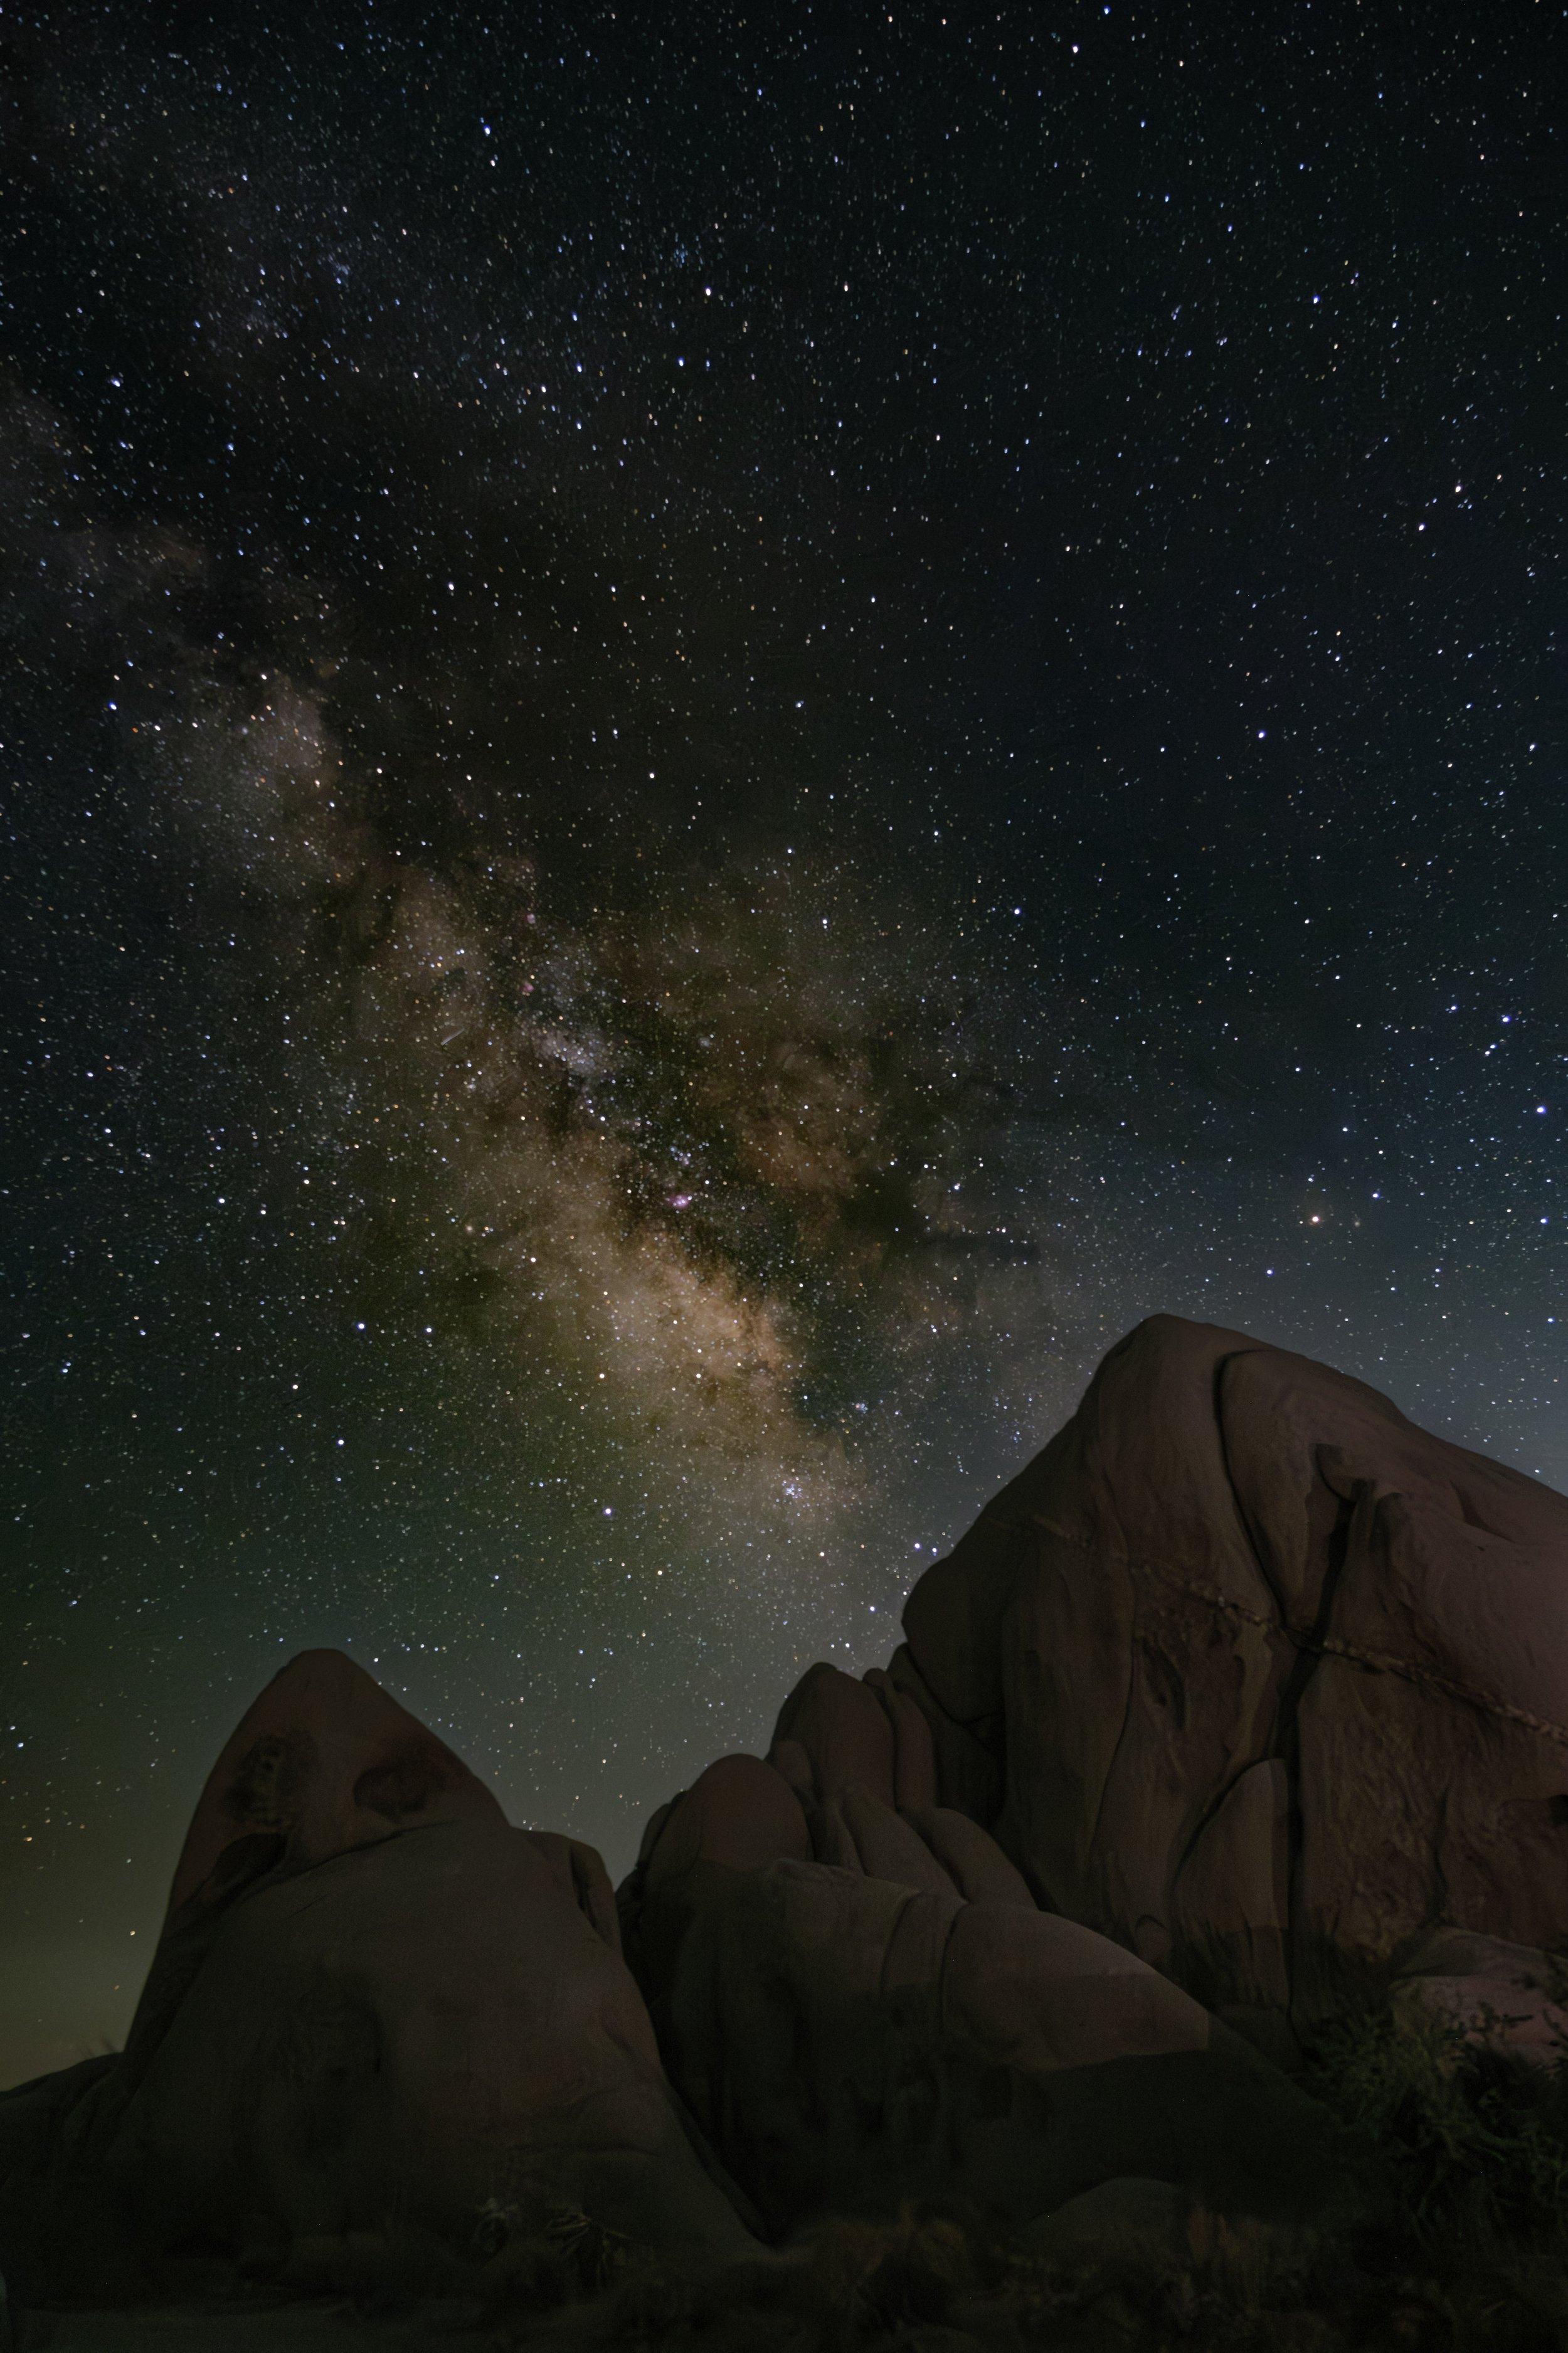 stargazing in the desert